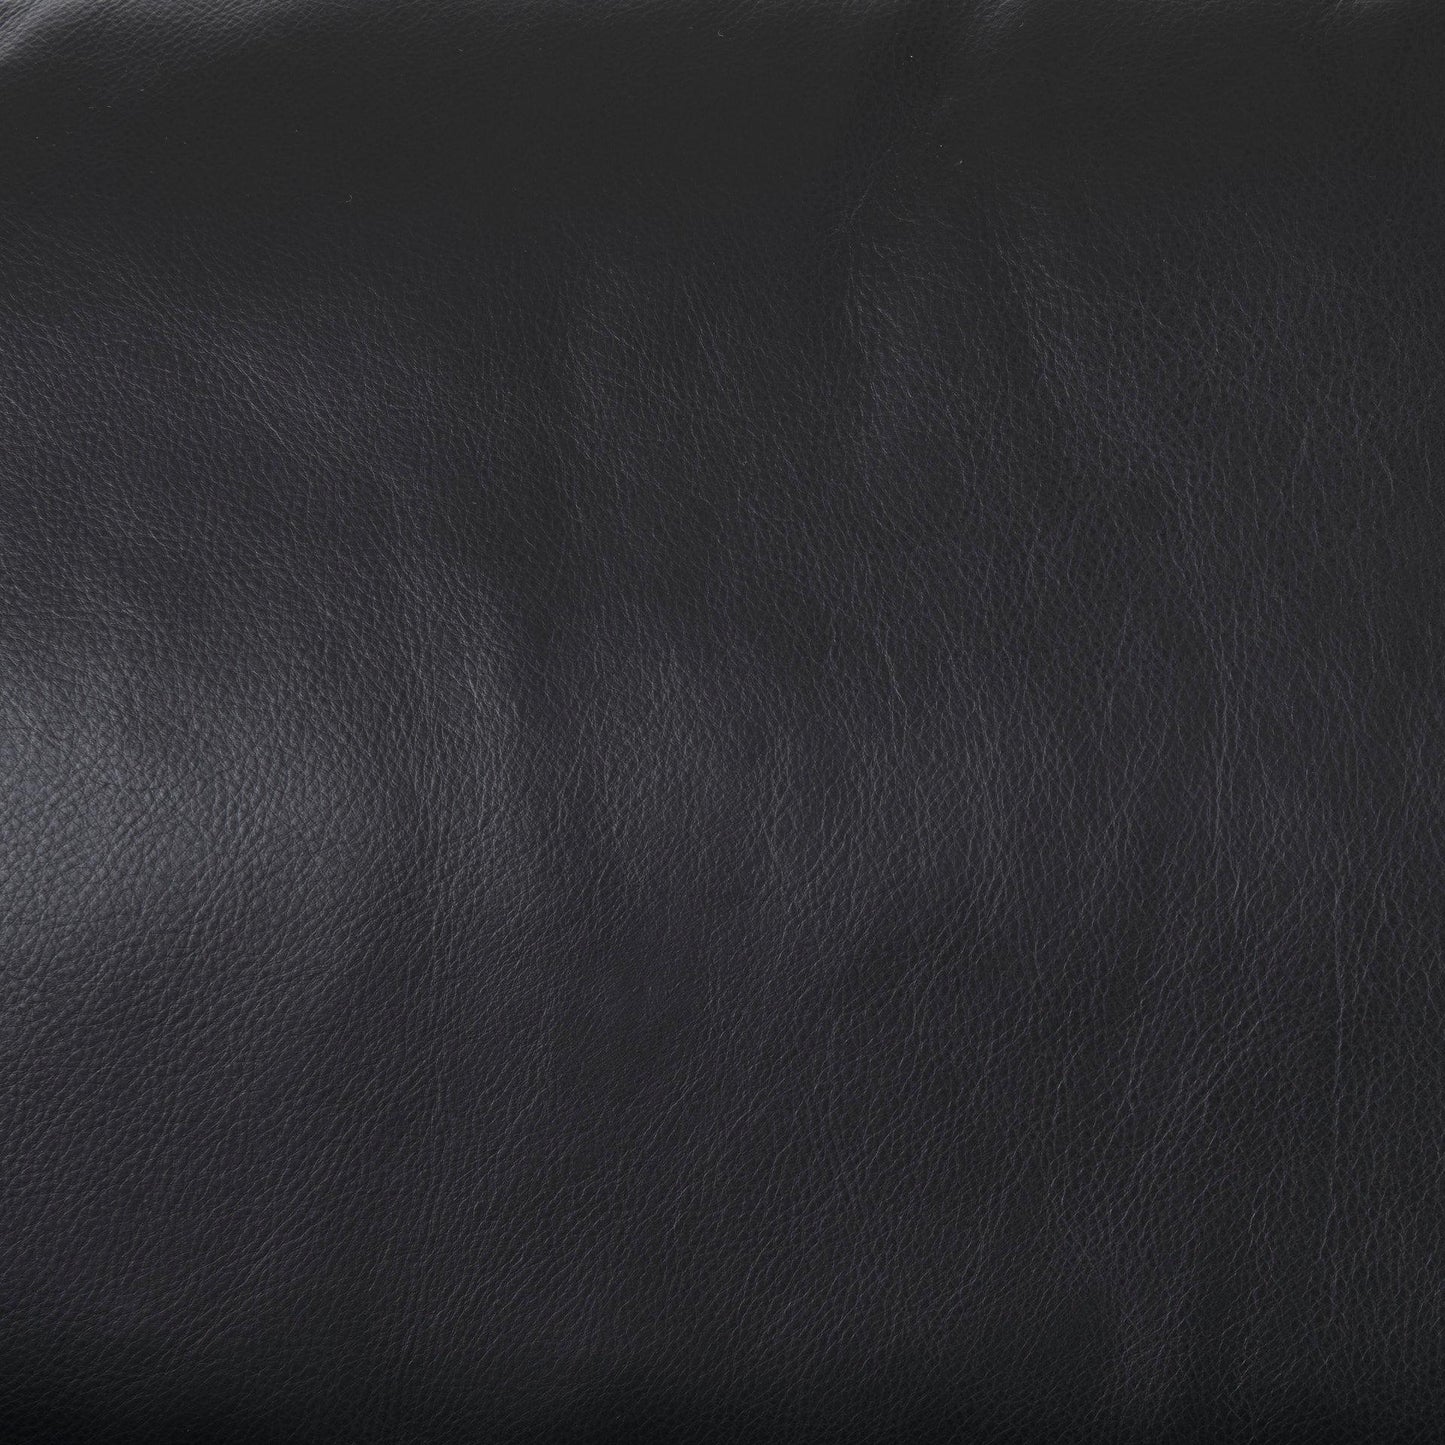 Svend 88.0L x 38.0W x 34.0H Black Leather Sofa